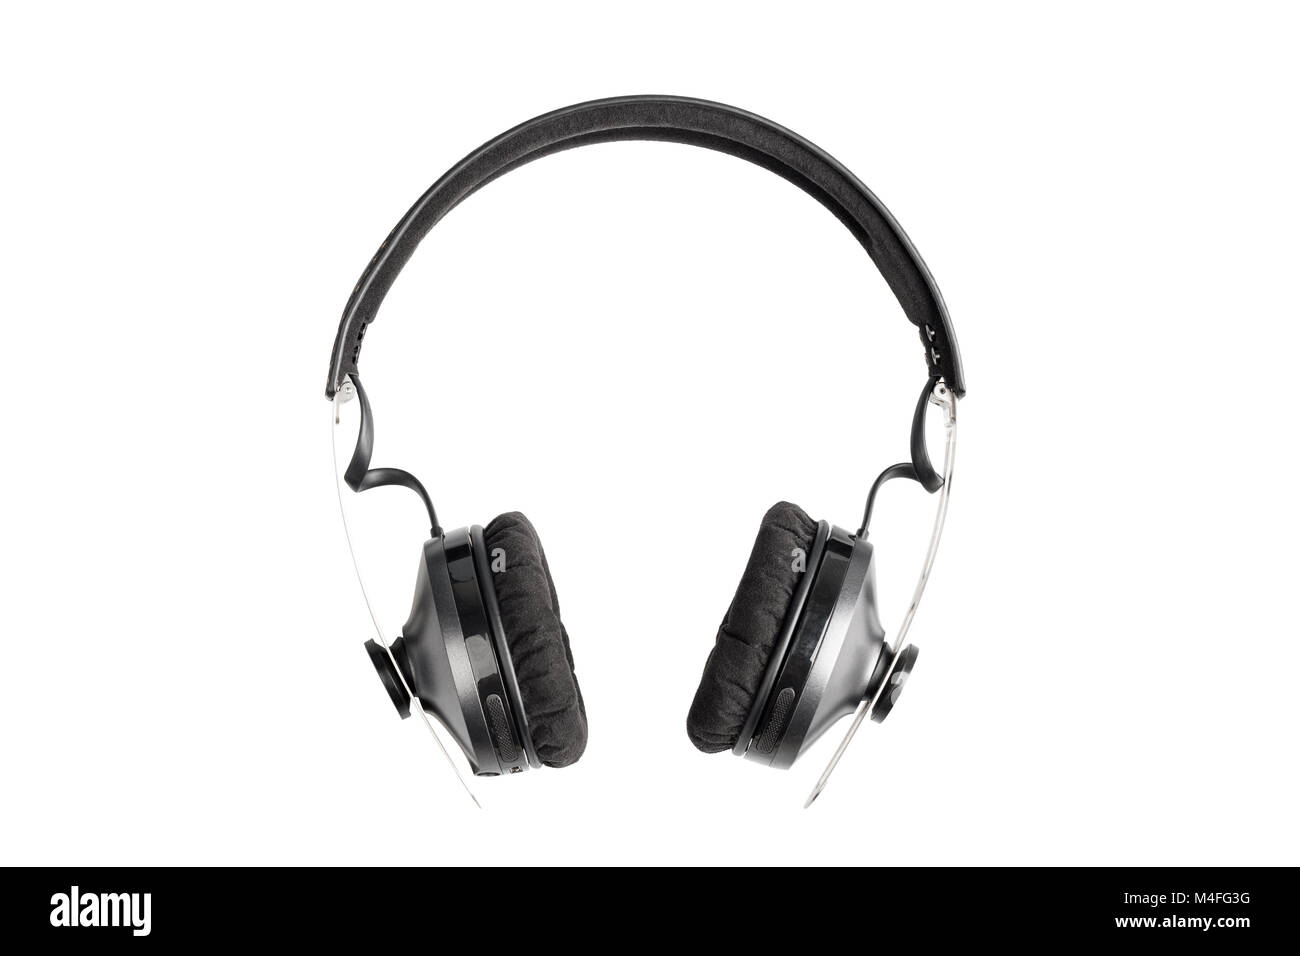 wireless headphones isolated Stock Photo